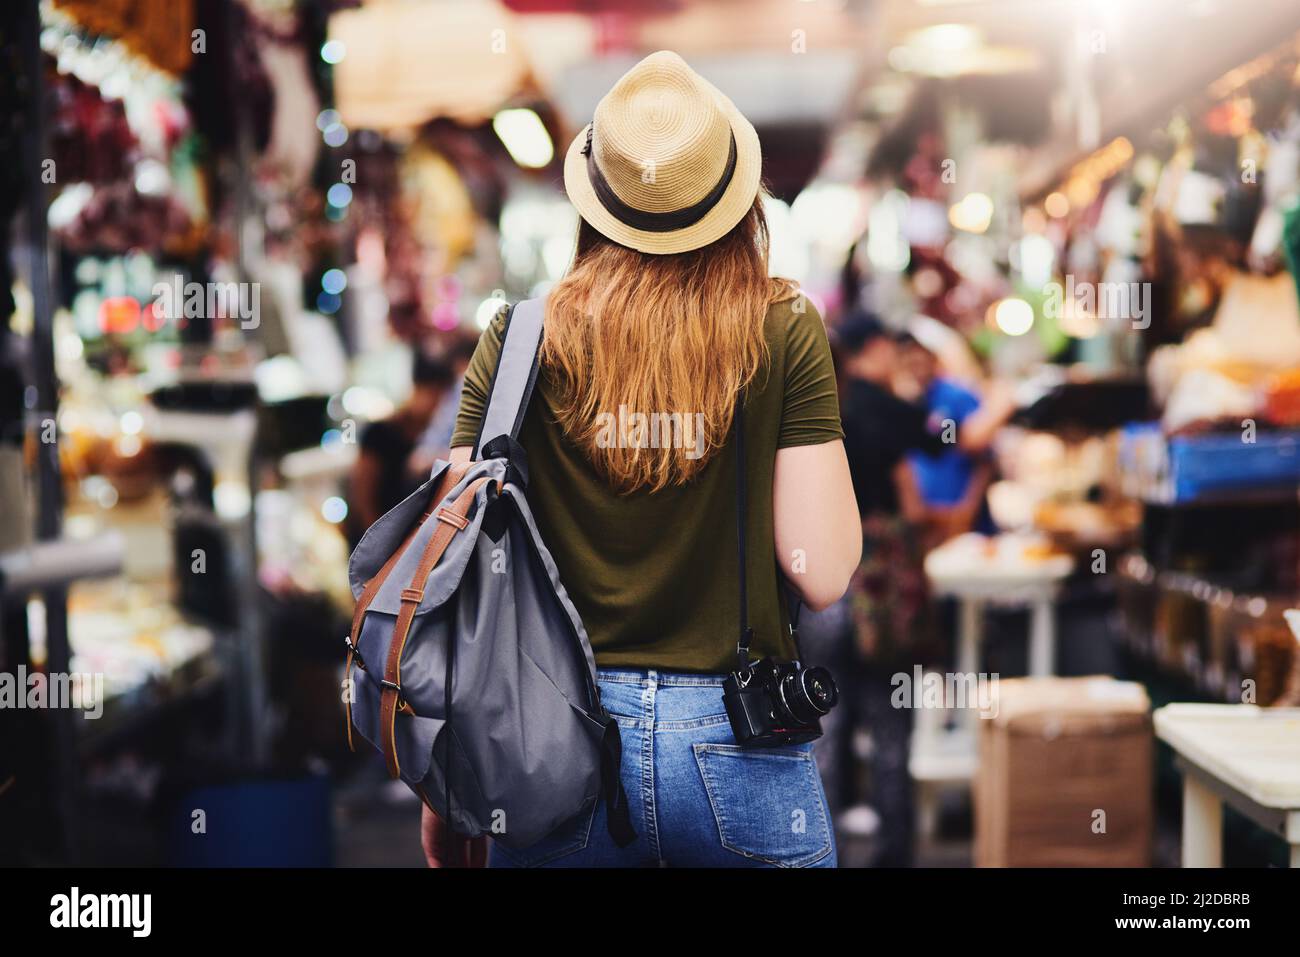 Weiter zum nächsten Wundergebiet. Rückansicht einer unverkennbaren Frau, die einen Hut trägt und tagsüber durch einen belebten Markt im Freien läuft. Stockfoto